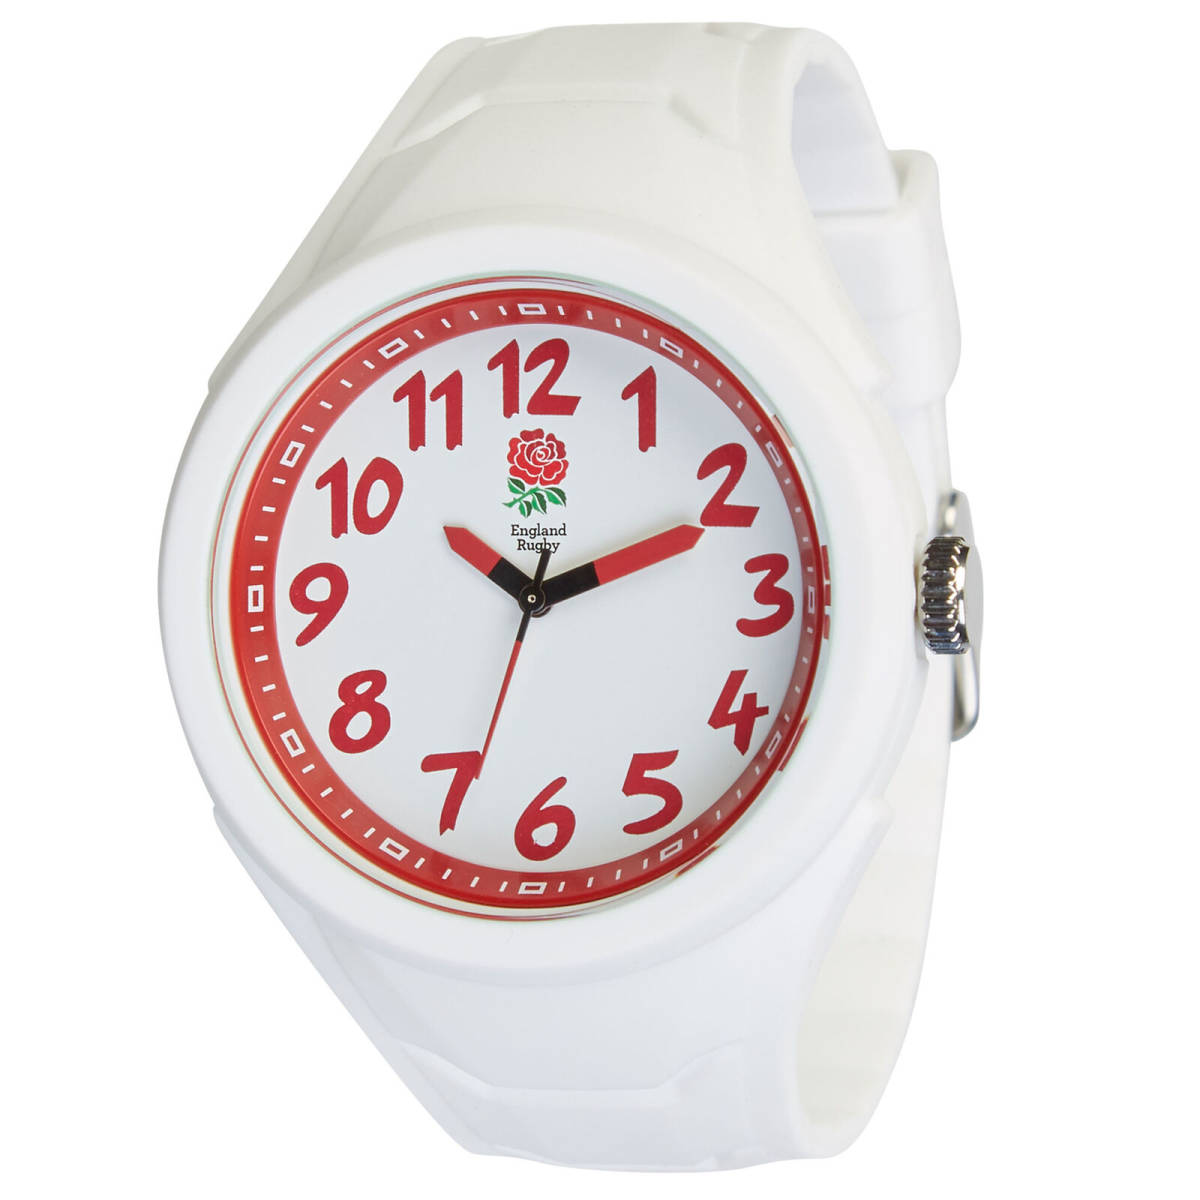 ★送料無料★England Rugby イングランド ラグビー 腕時計 シリコン性 時計 5気圧防水(50M)